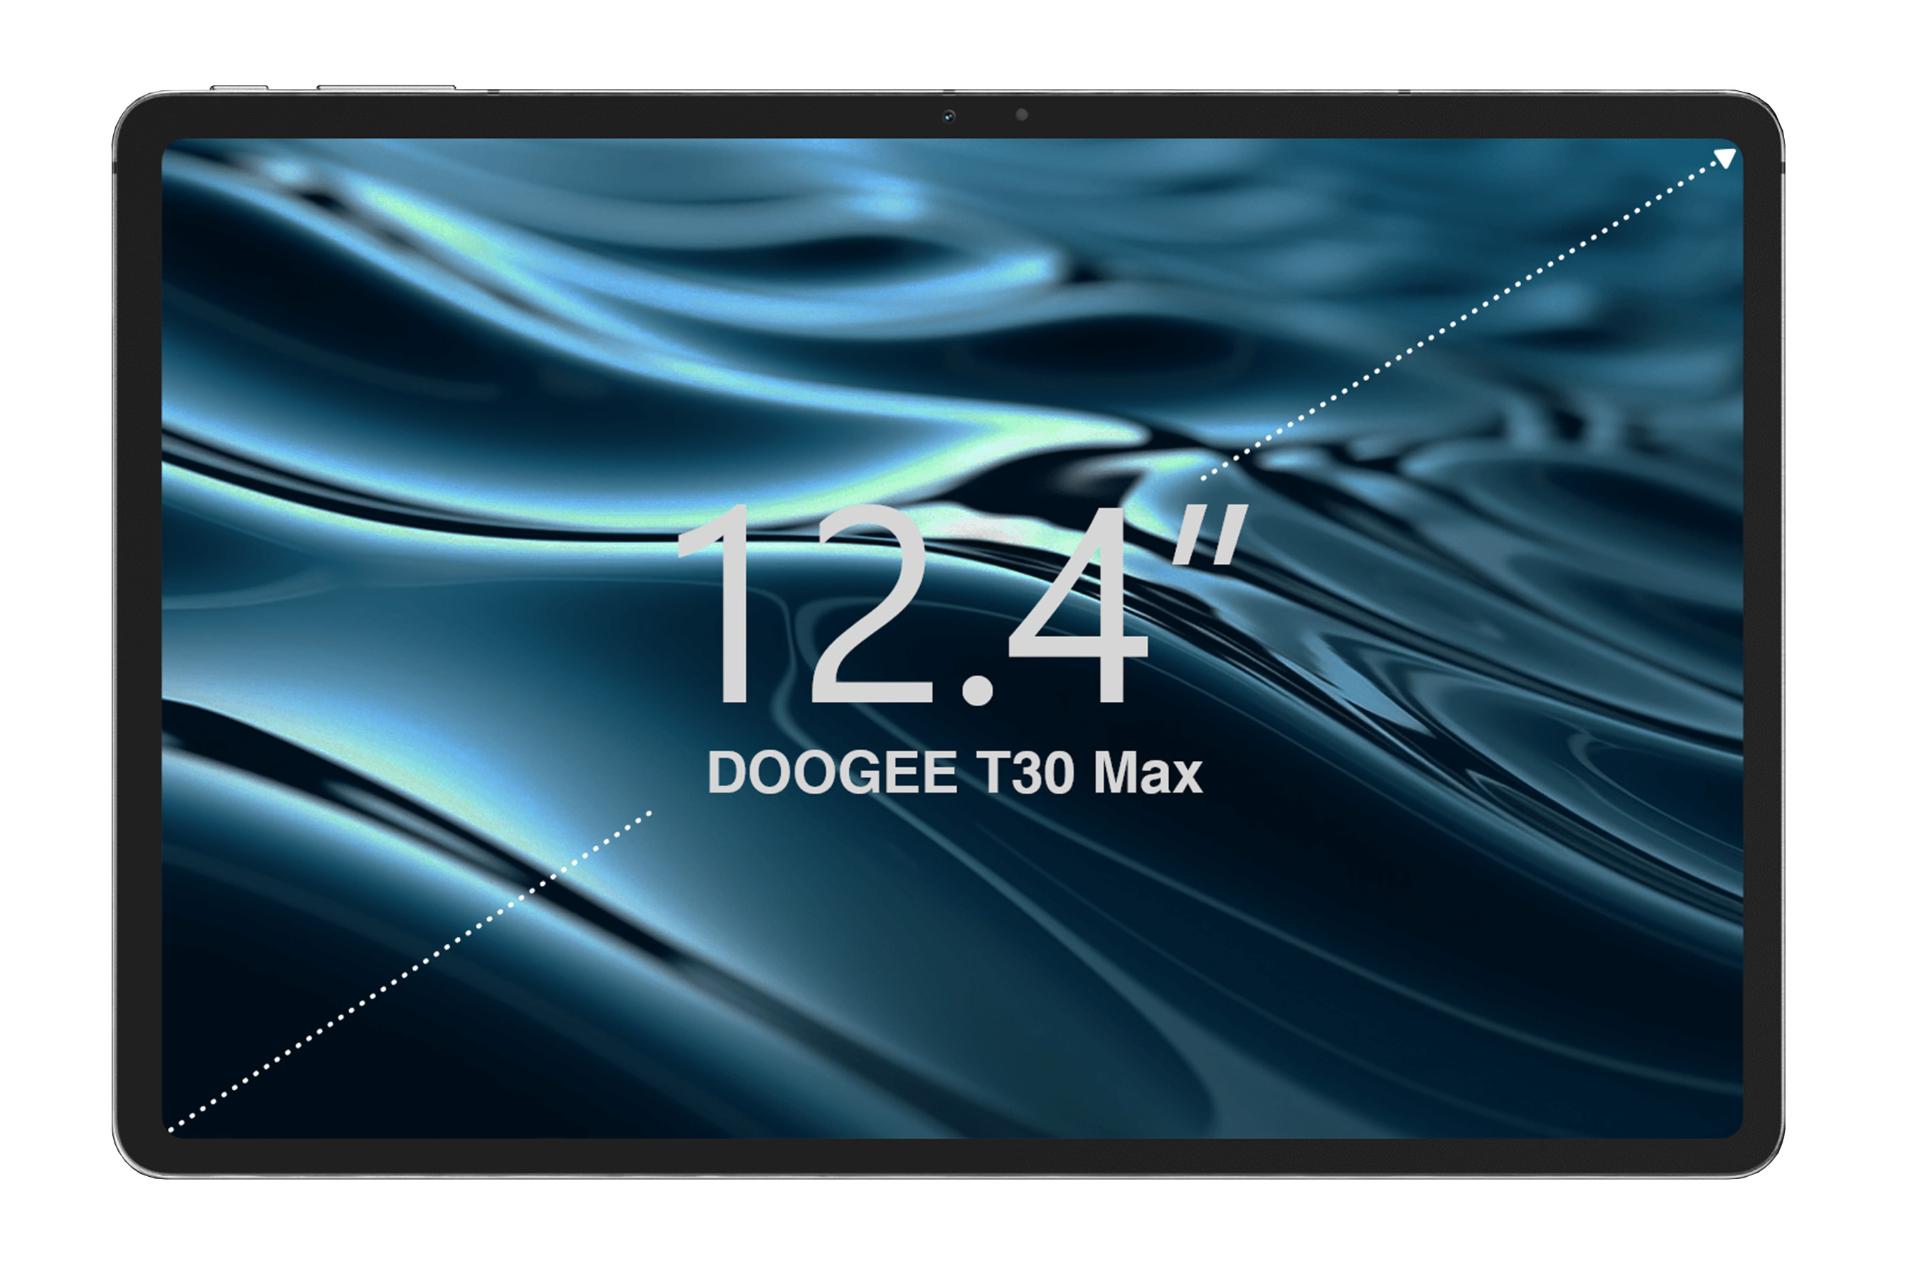 نمای رو به روی تبلت T30 Max دوجی / Doogee T30 Max با نمایشگر روشن و نمایش ابعاد نمایشگر و دوربین سلفی